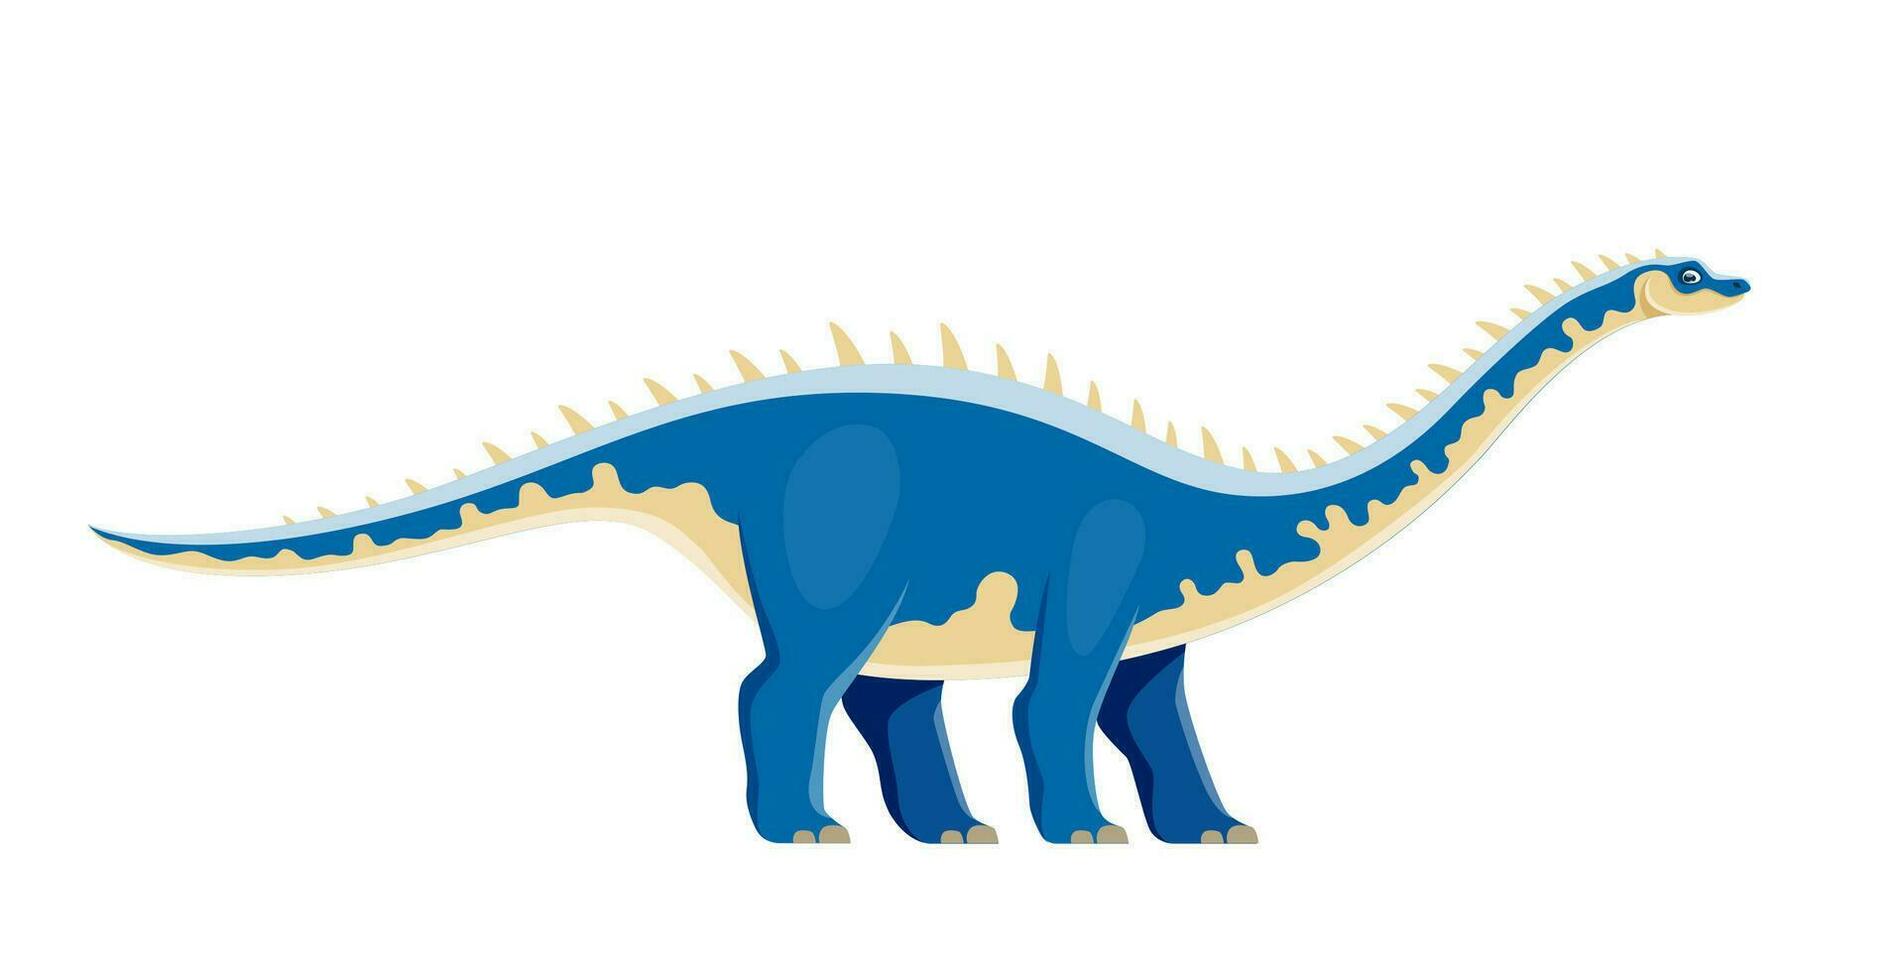 Cartoon Kotasaurus dinosaur character, cute dino vector